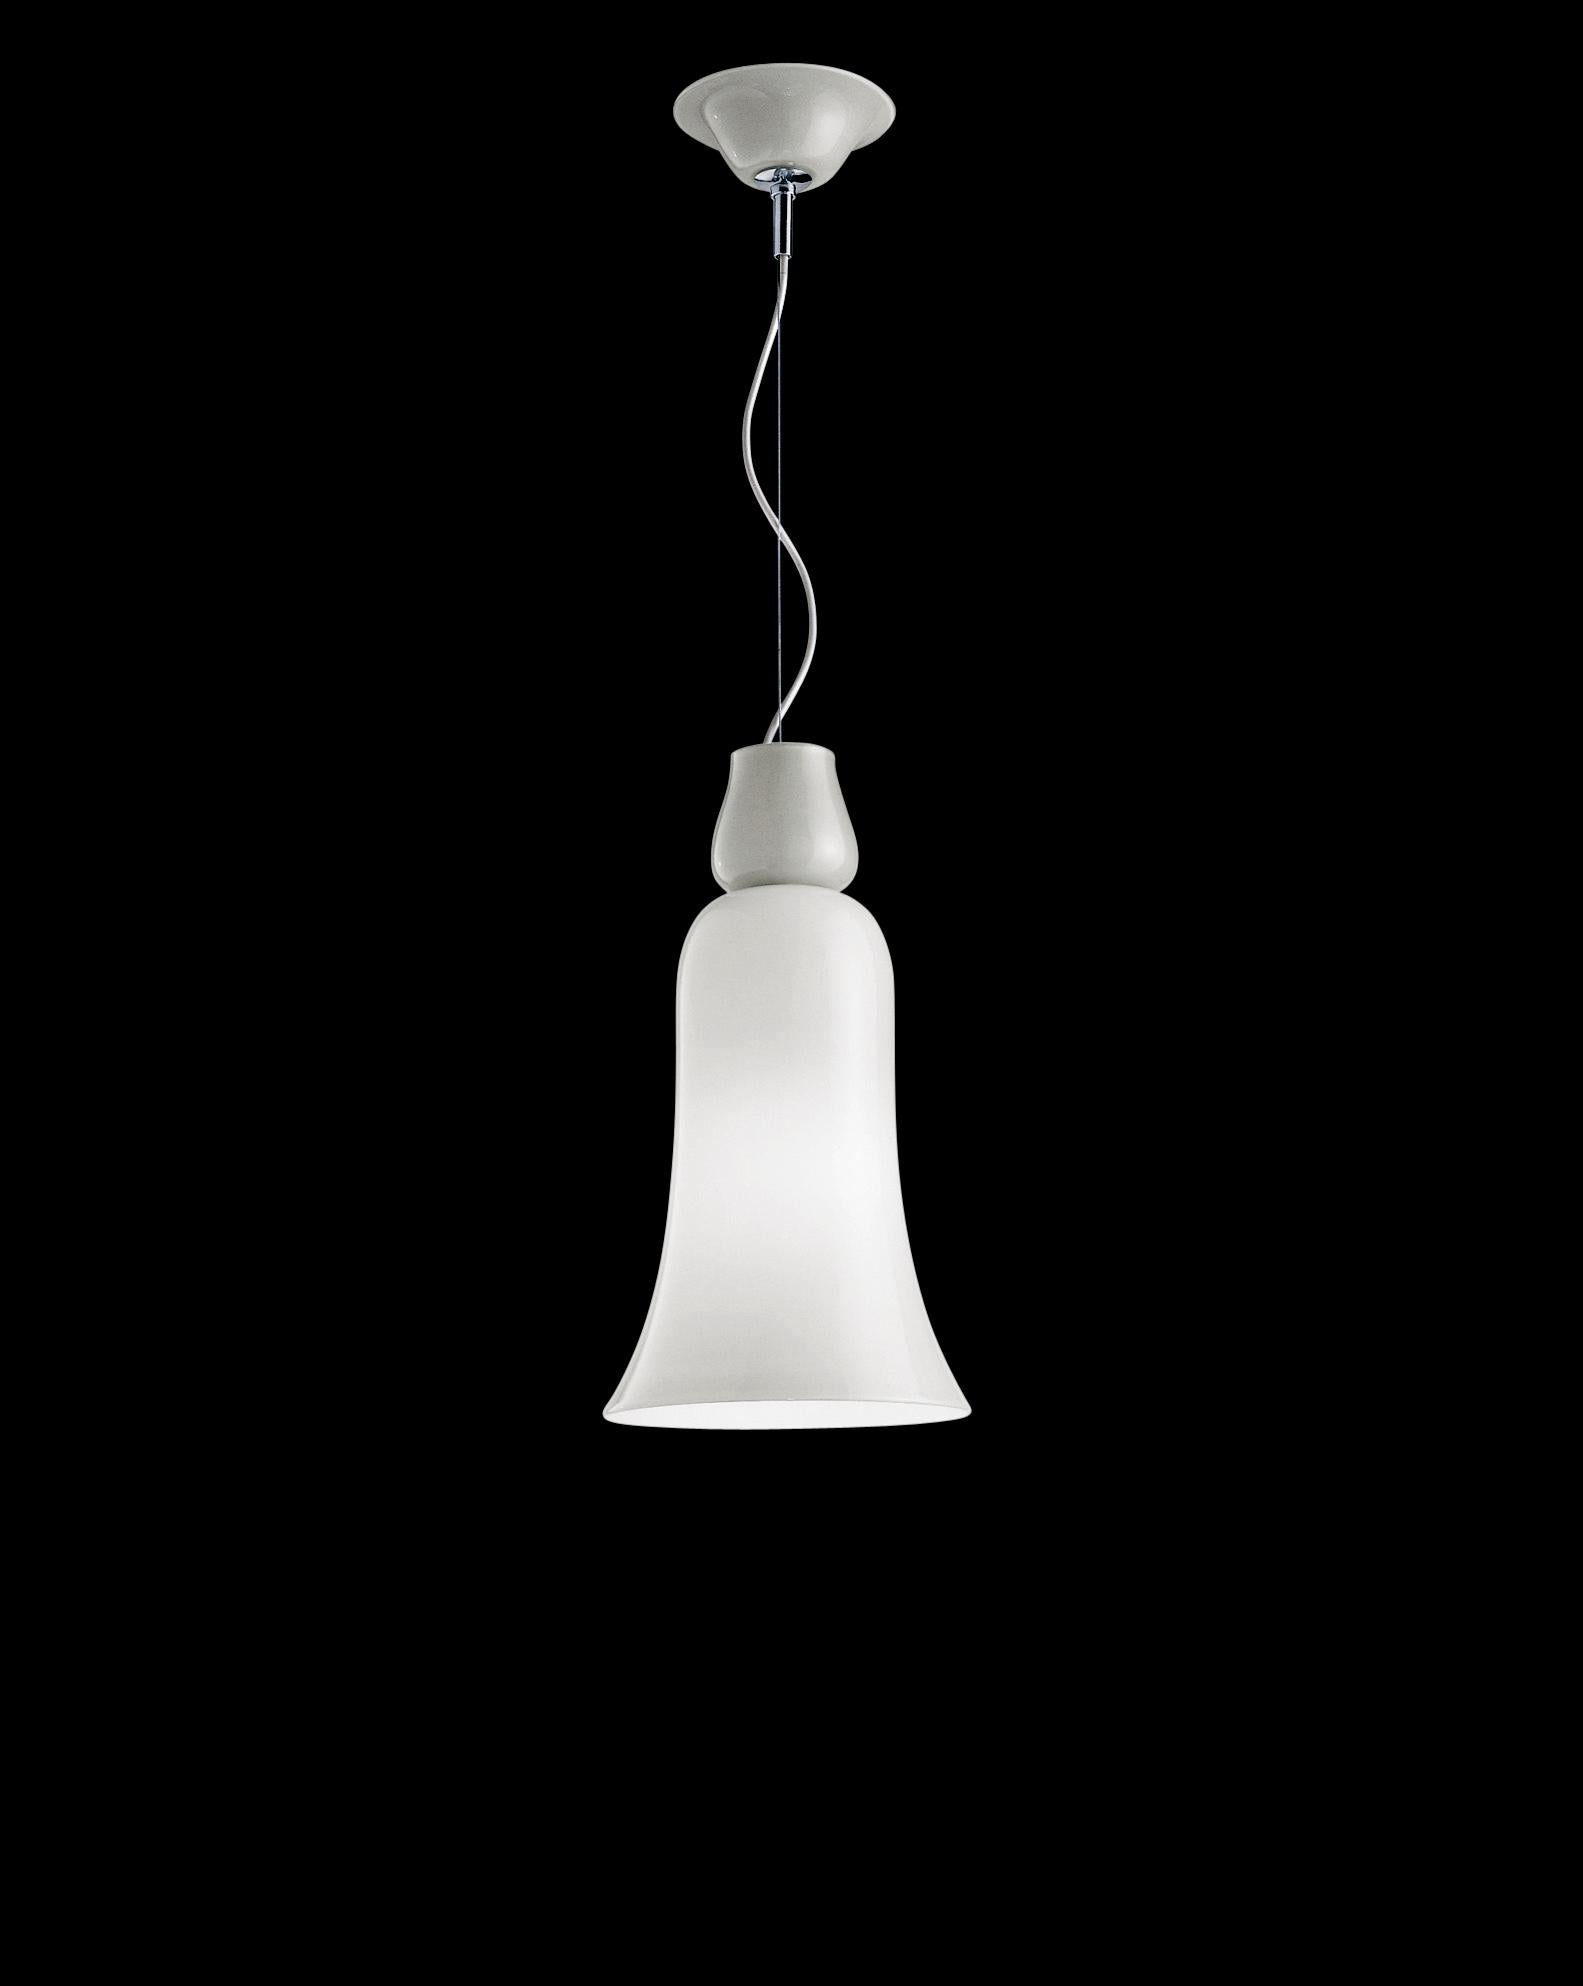 La lampe à suspension Anni Trenta, conçue et fabriquée par Venini, présente des lignes sinueuses qui rappellent clairement les années 1930. Disponible en deux couleurs différentes. Utilisation intérieure uniquement.

Dimensions : Ø 24 cm, H 47